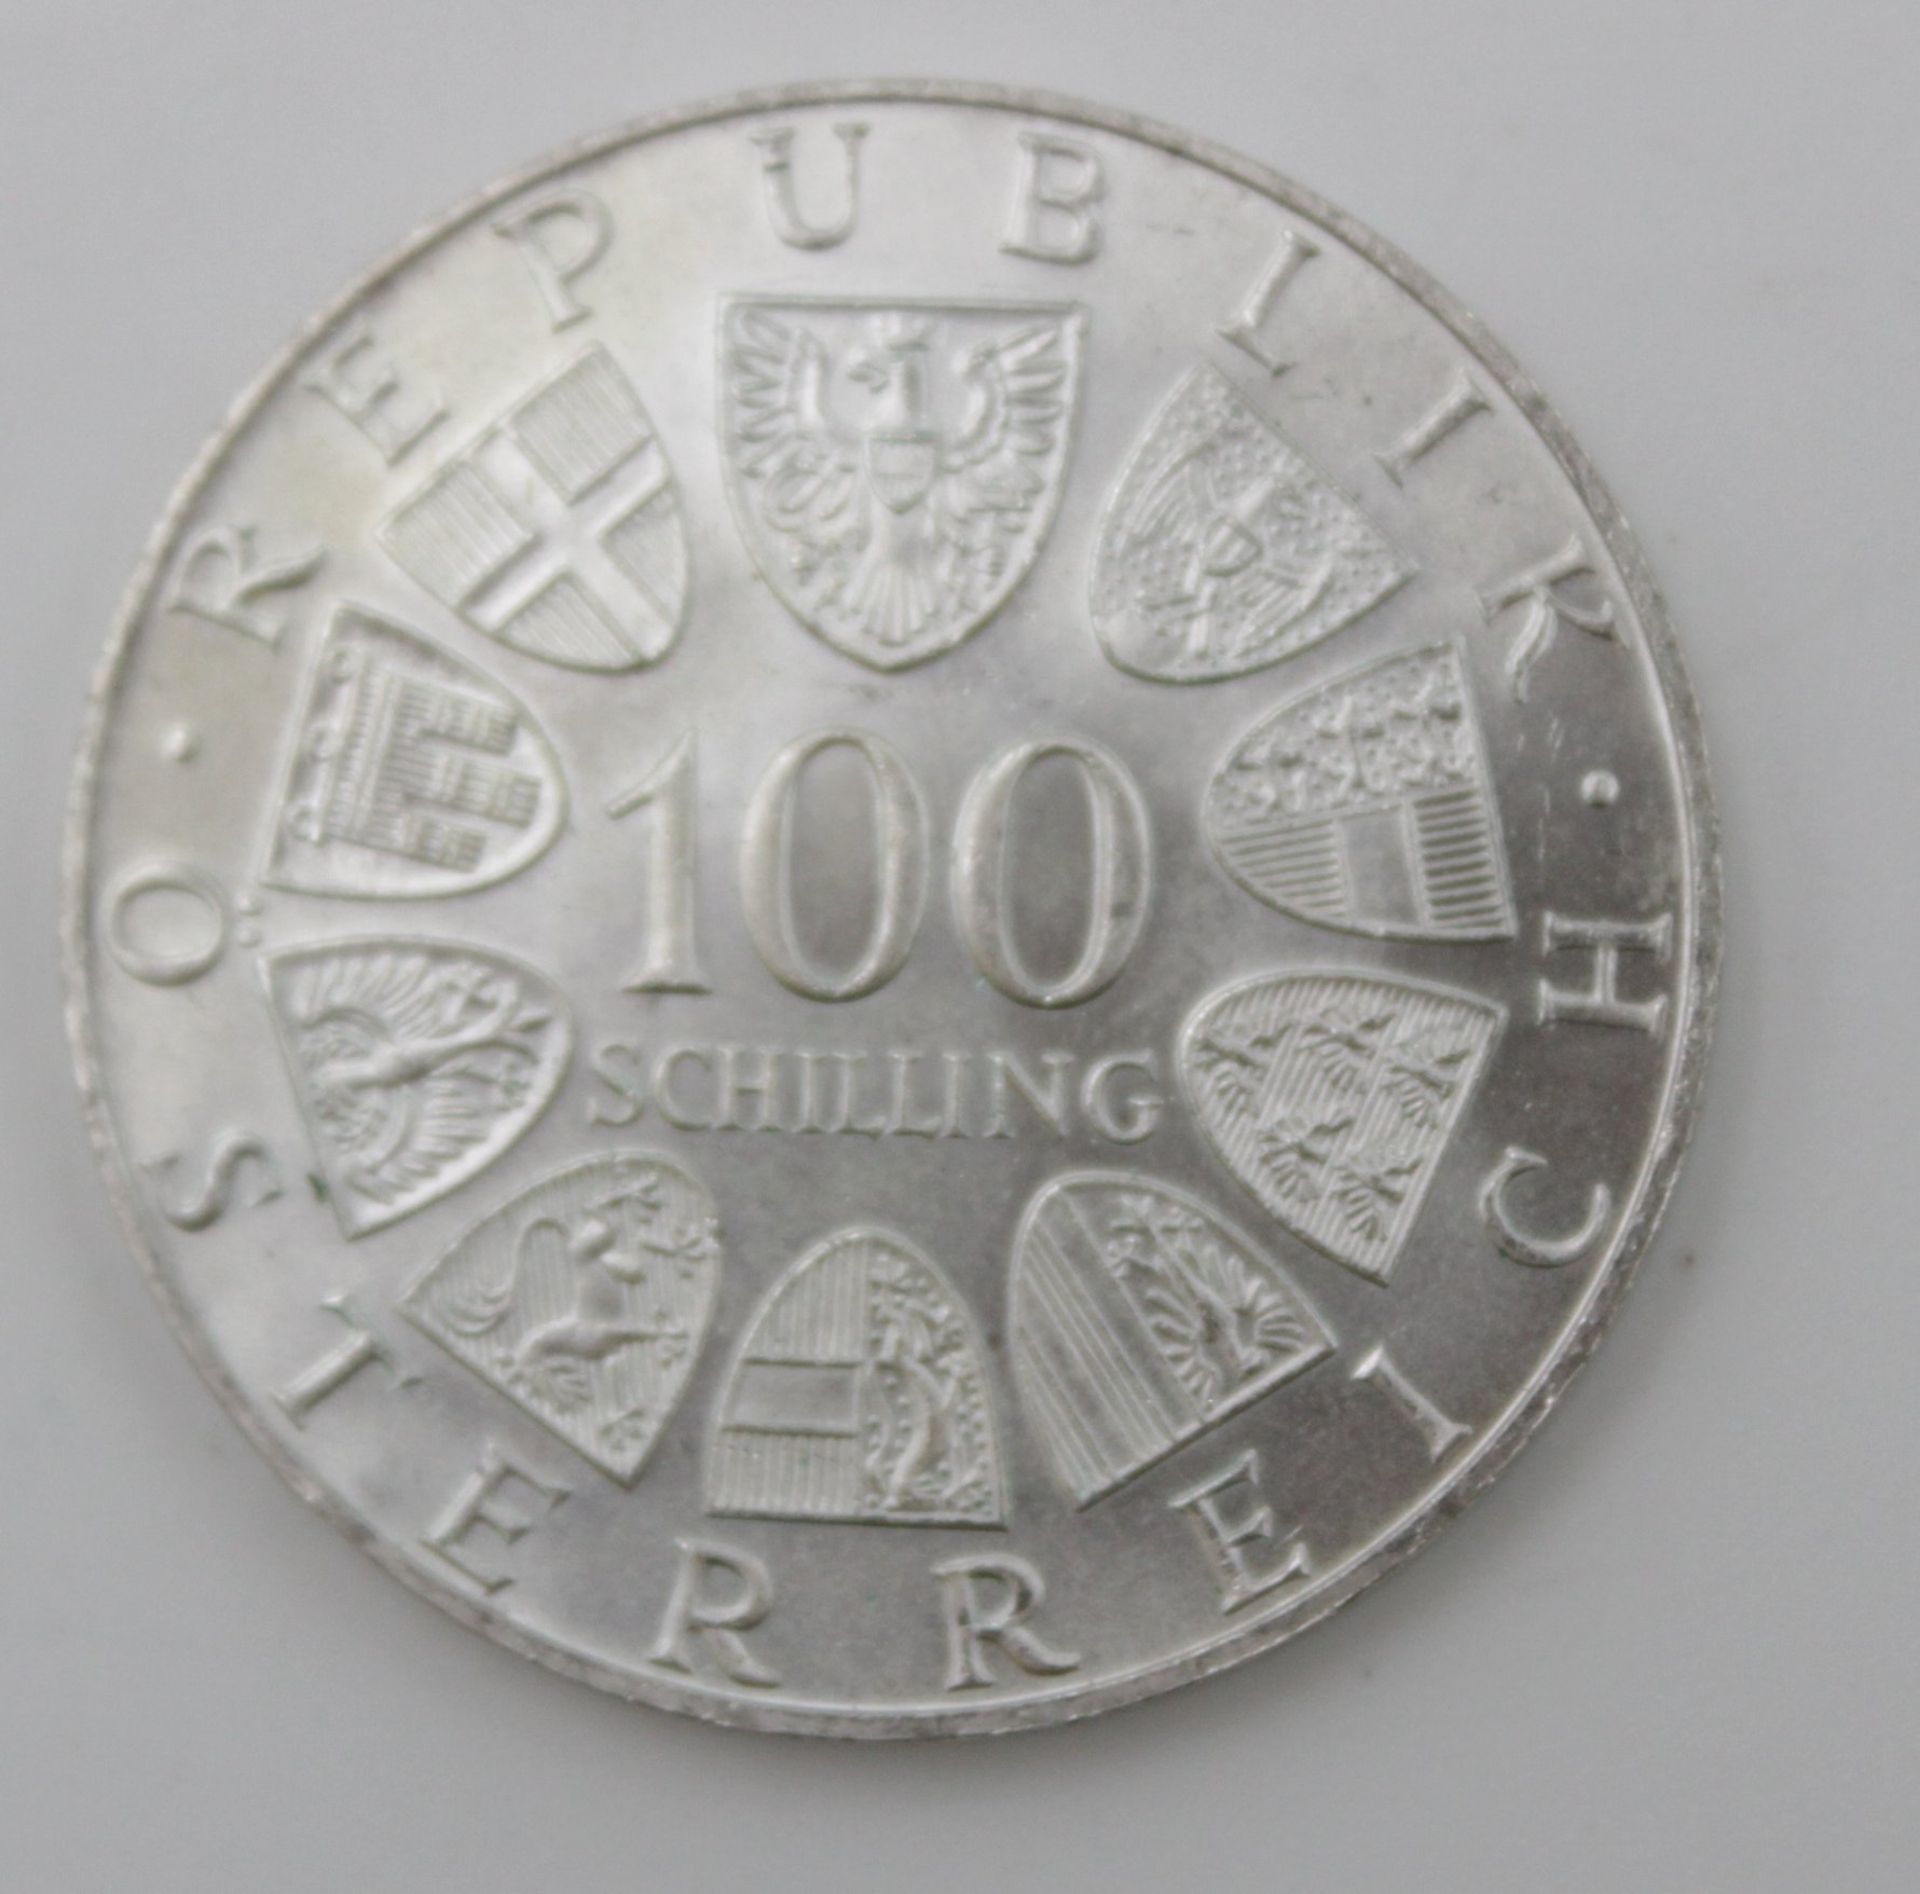 2100 Schilling, Österreich, 21 Münzen a 100 Schilling, Silber - Bild 5 aus 5